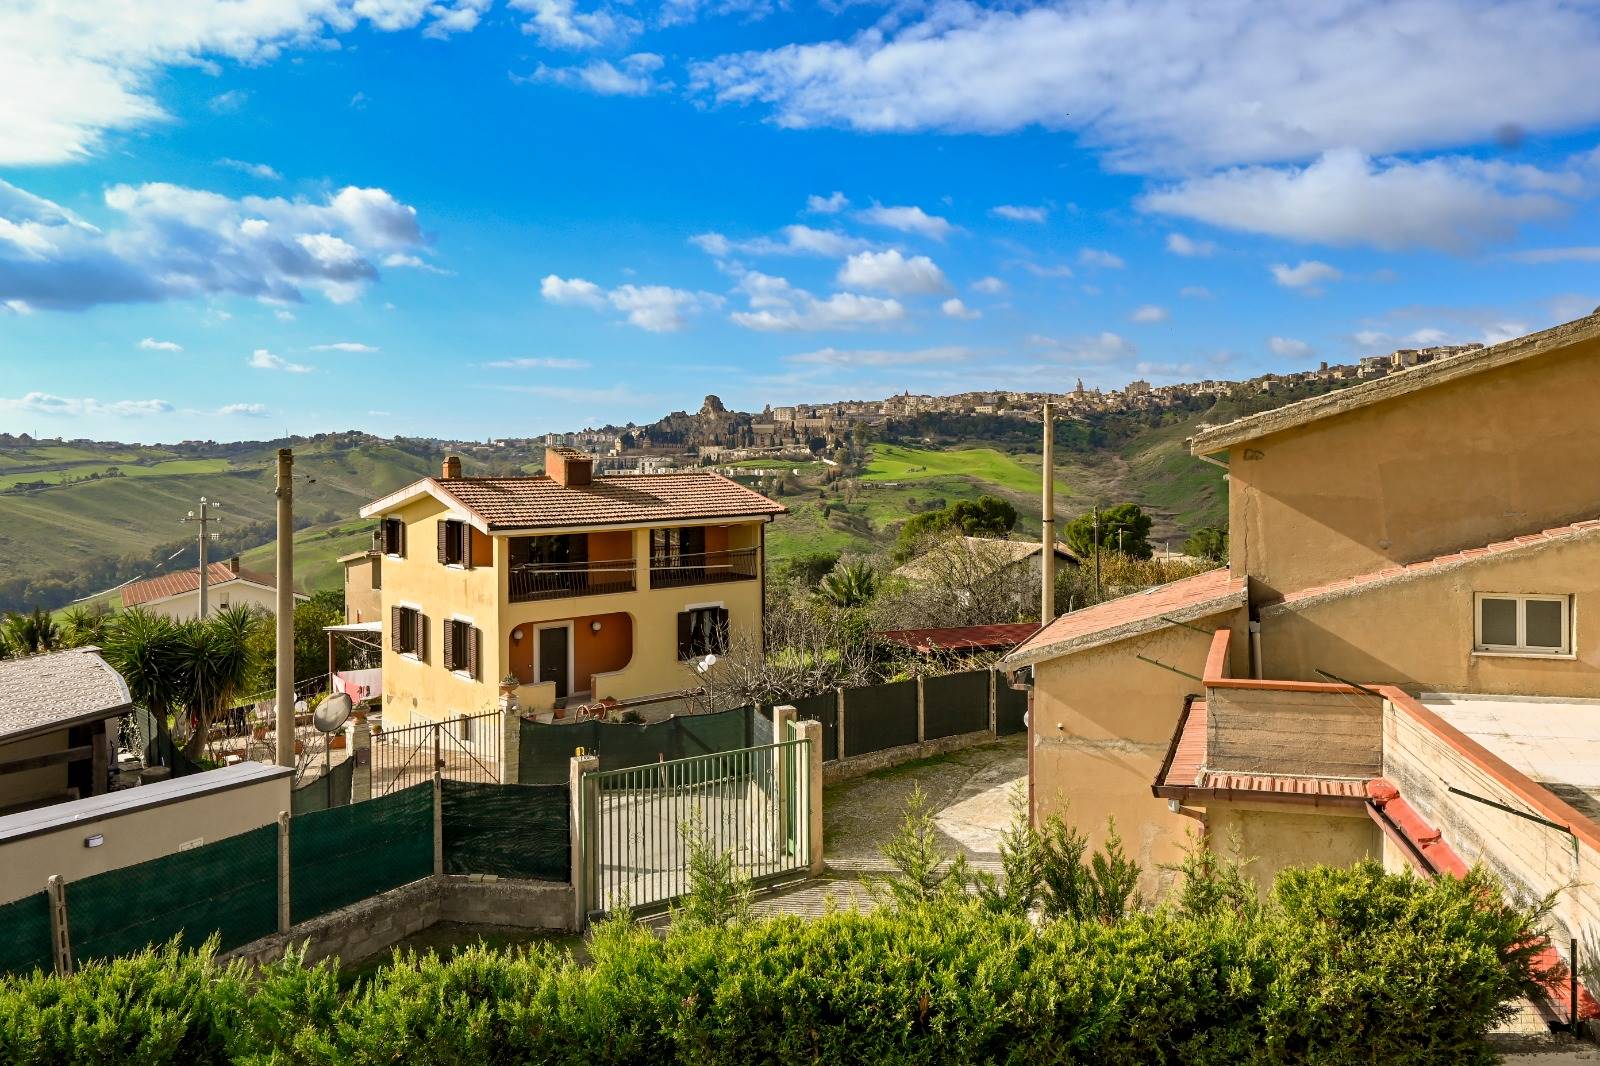 Villa Bifamiliare in vendita a Caltanissetta - Zona: Villaggio Santa Barbara - Terrapelata